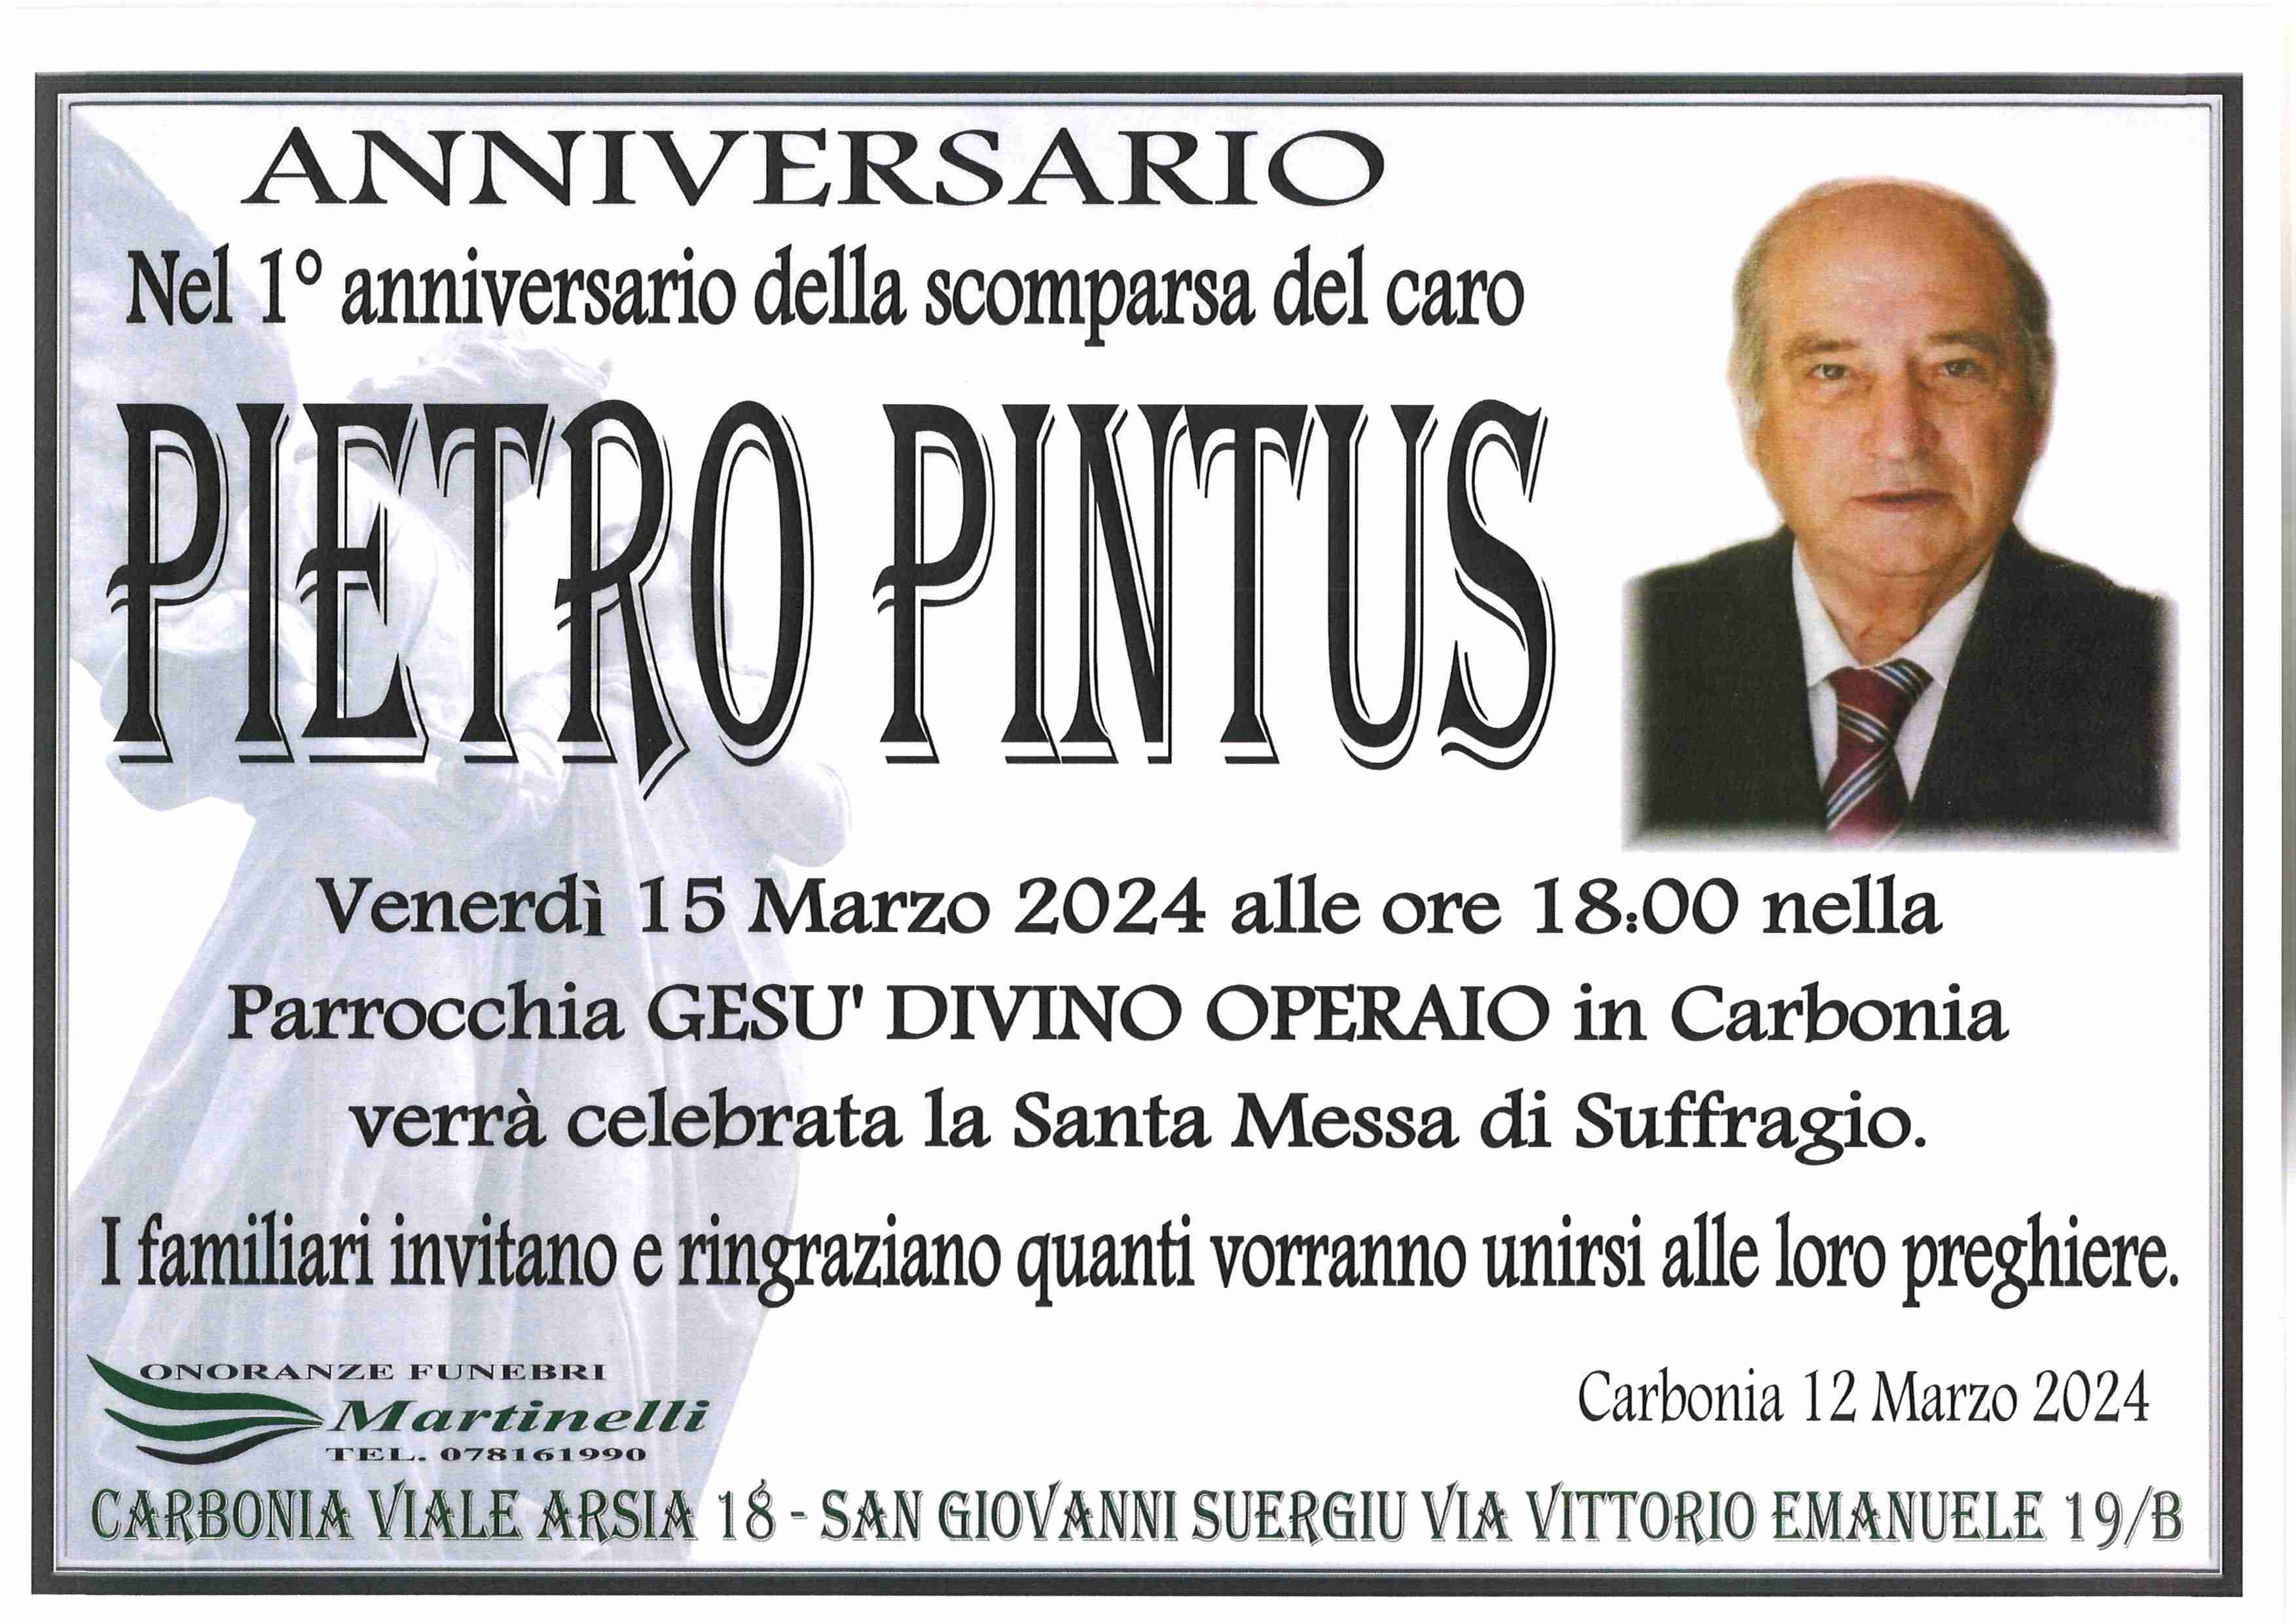 Pietro Pintus